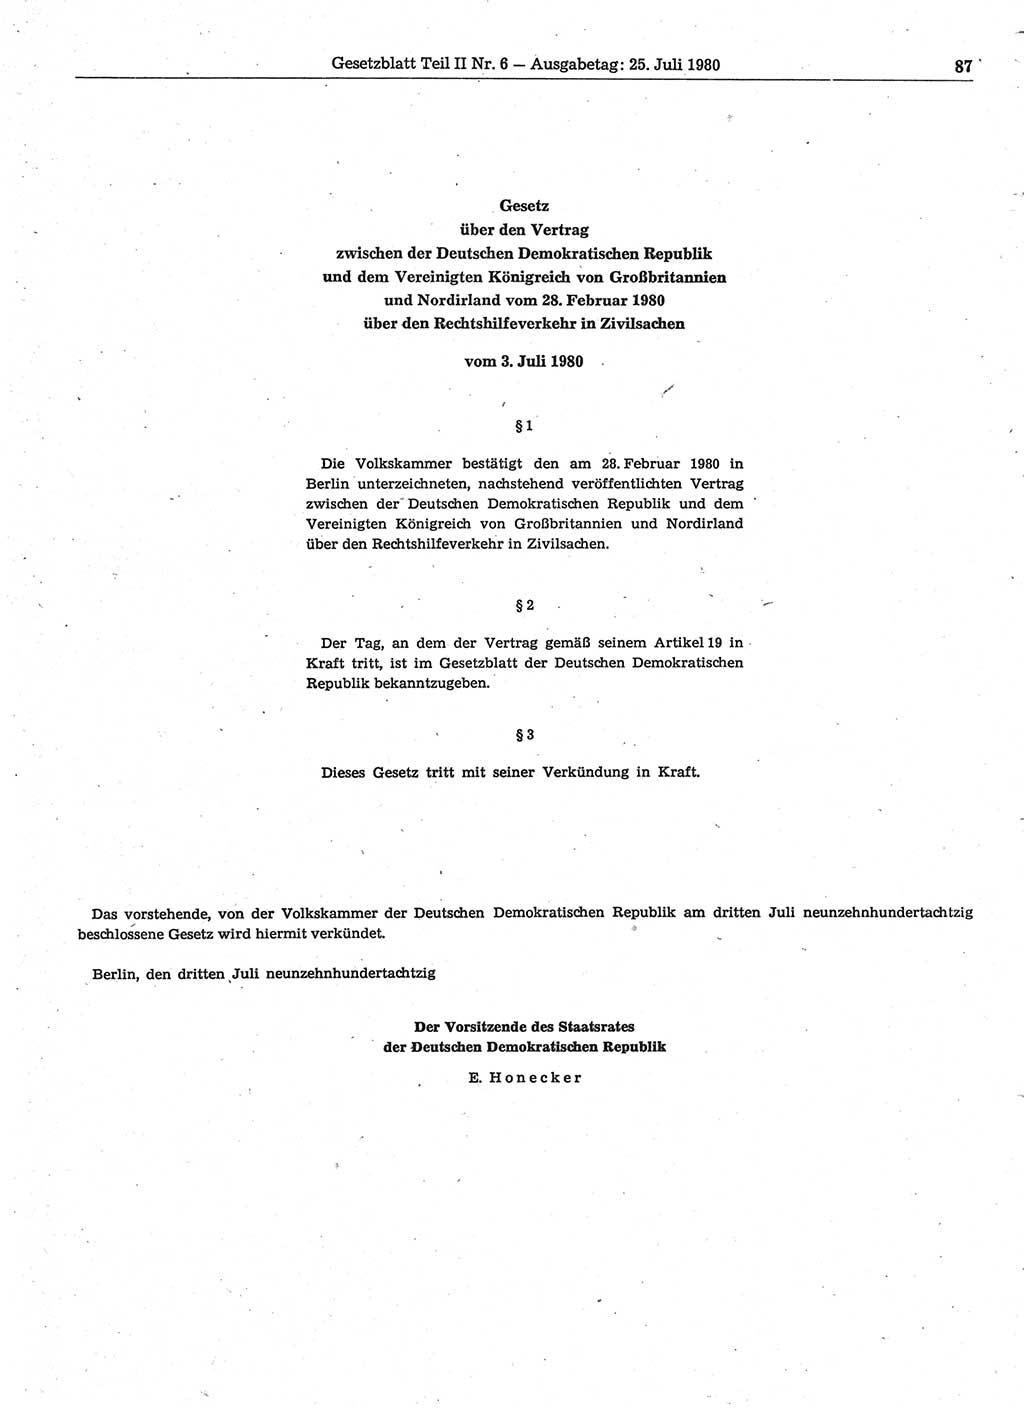 Gesetzblatt (GBl.) der Deutschen Demokratischen Republik (DDR) Teil ⅠⅠ 1980, Seite 87 (GBl. DDR ⅠⅠ 1980, S. 87)